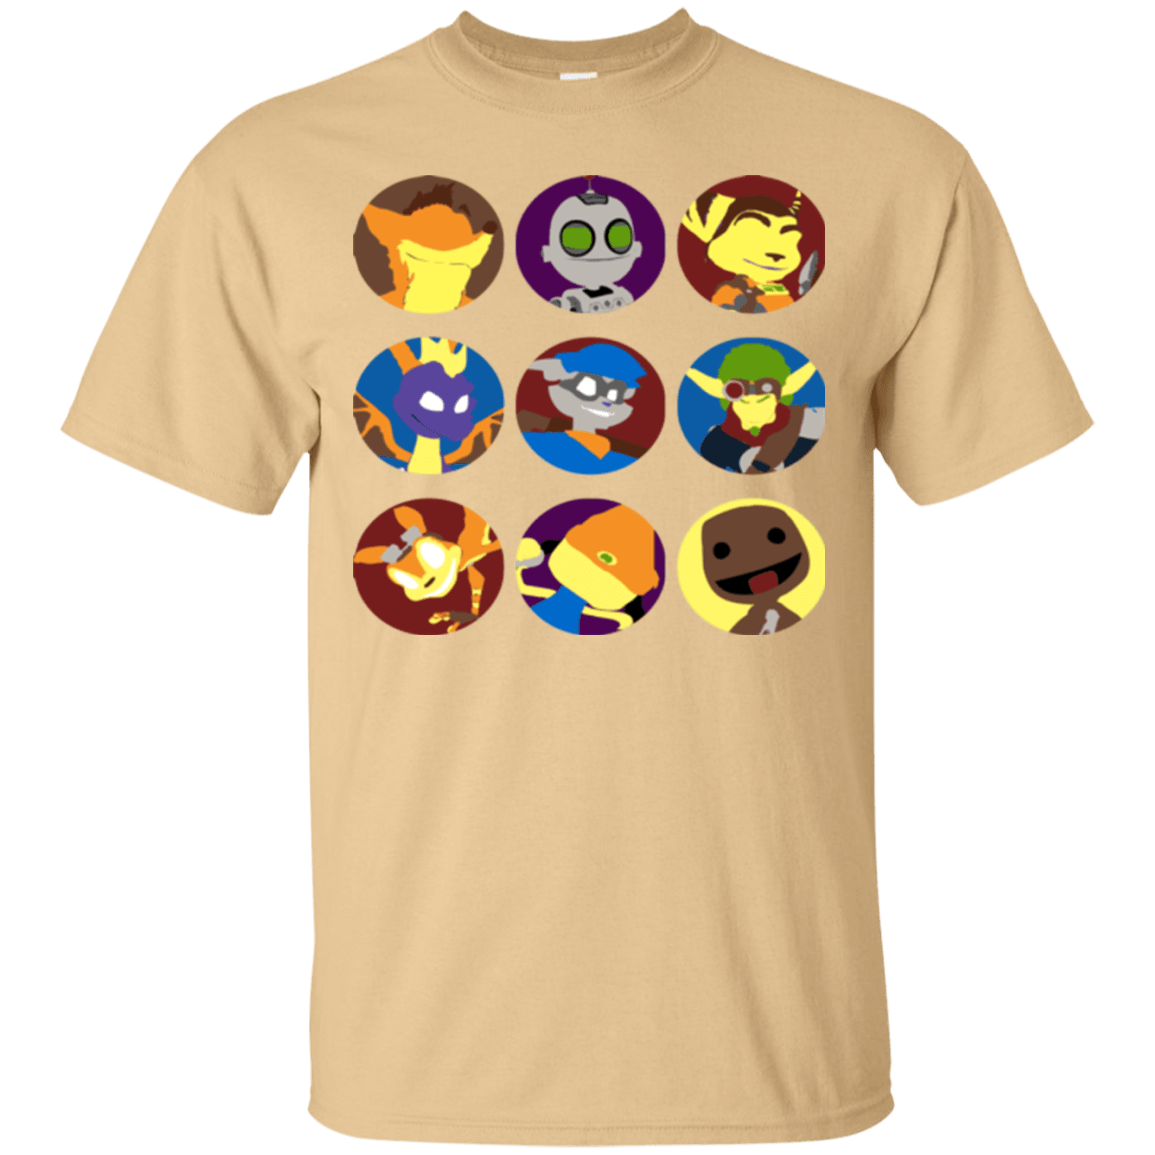 Fun Heroes T-Shirt